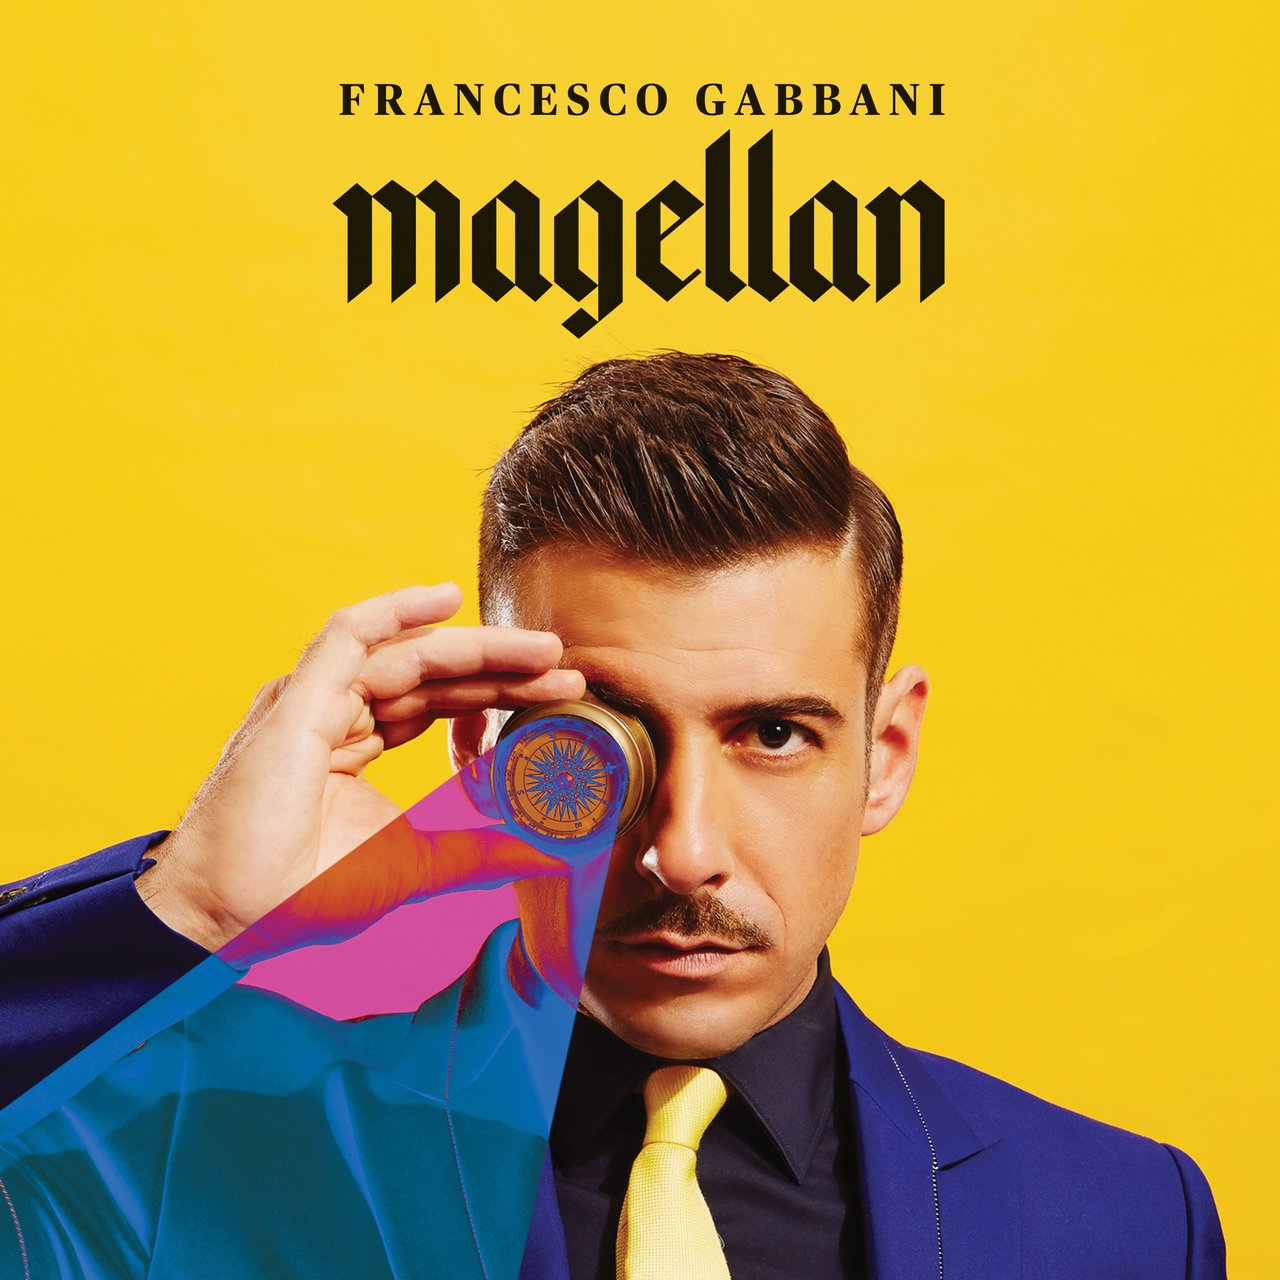 Francesco Gabbani — Pachidermi e pappagalli cover artwork